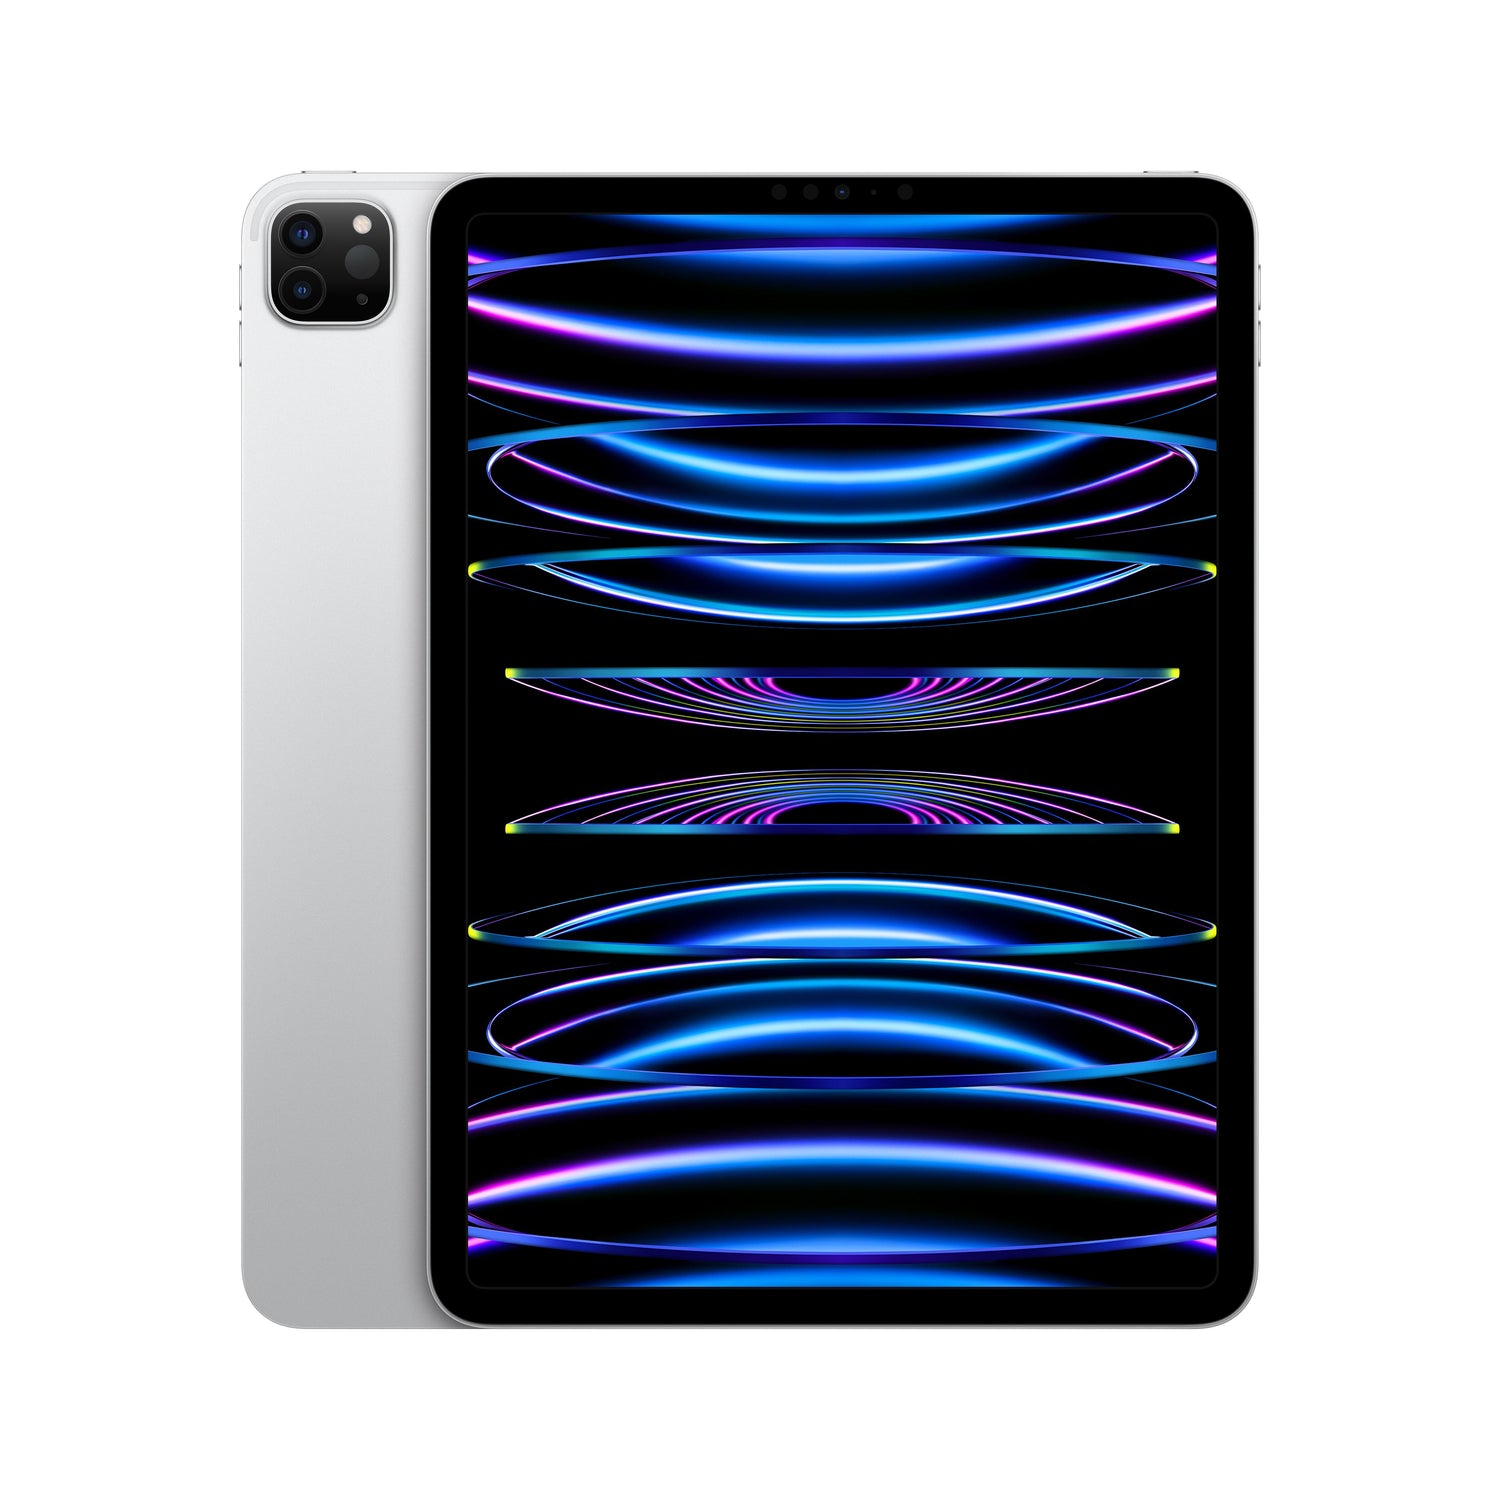 EOL 2022 iPad Pro 11 pouces, Wi-Fi, 128 Go - Argent (4e génération)